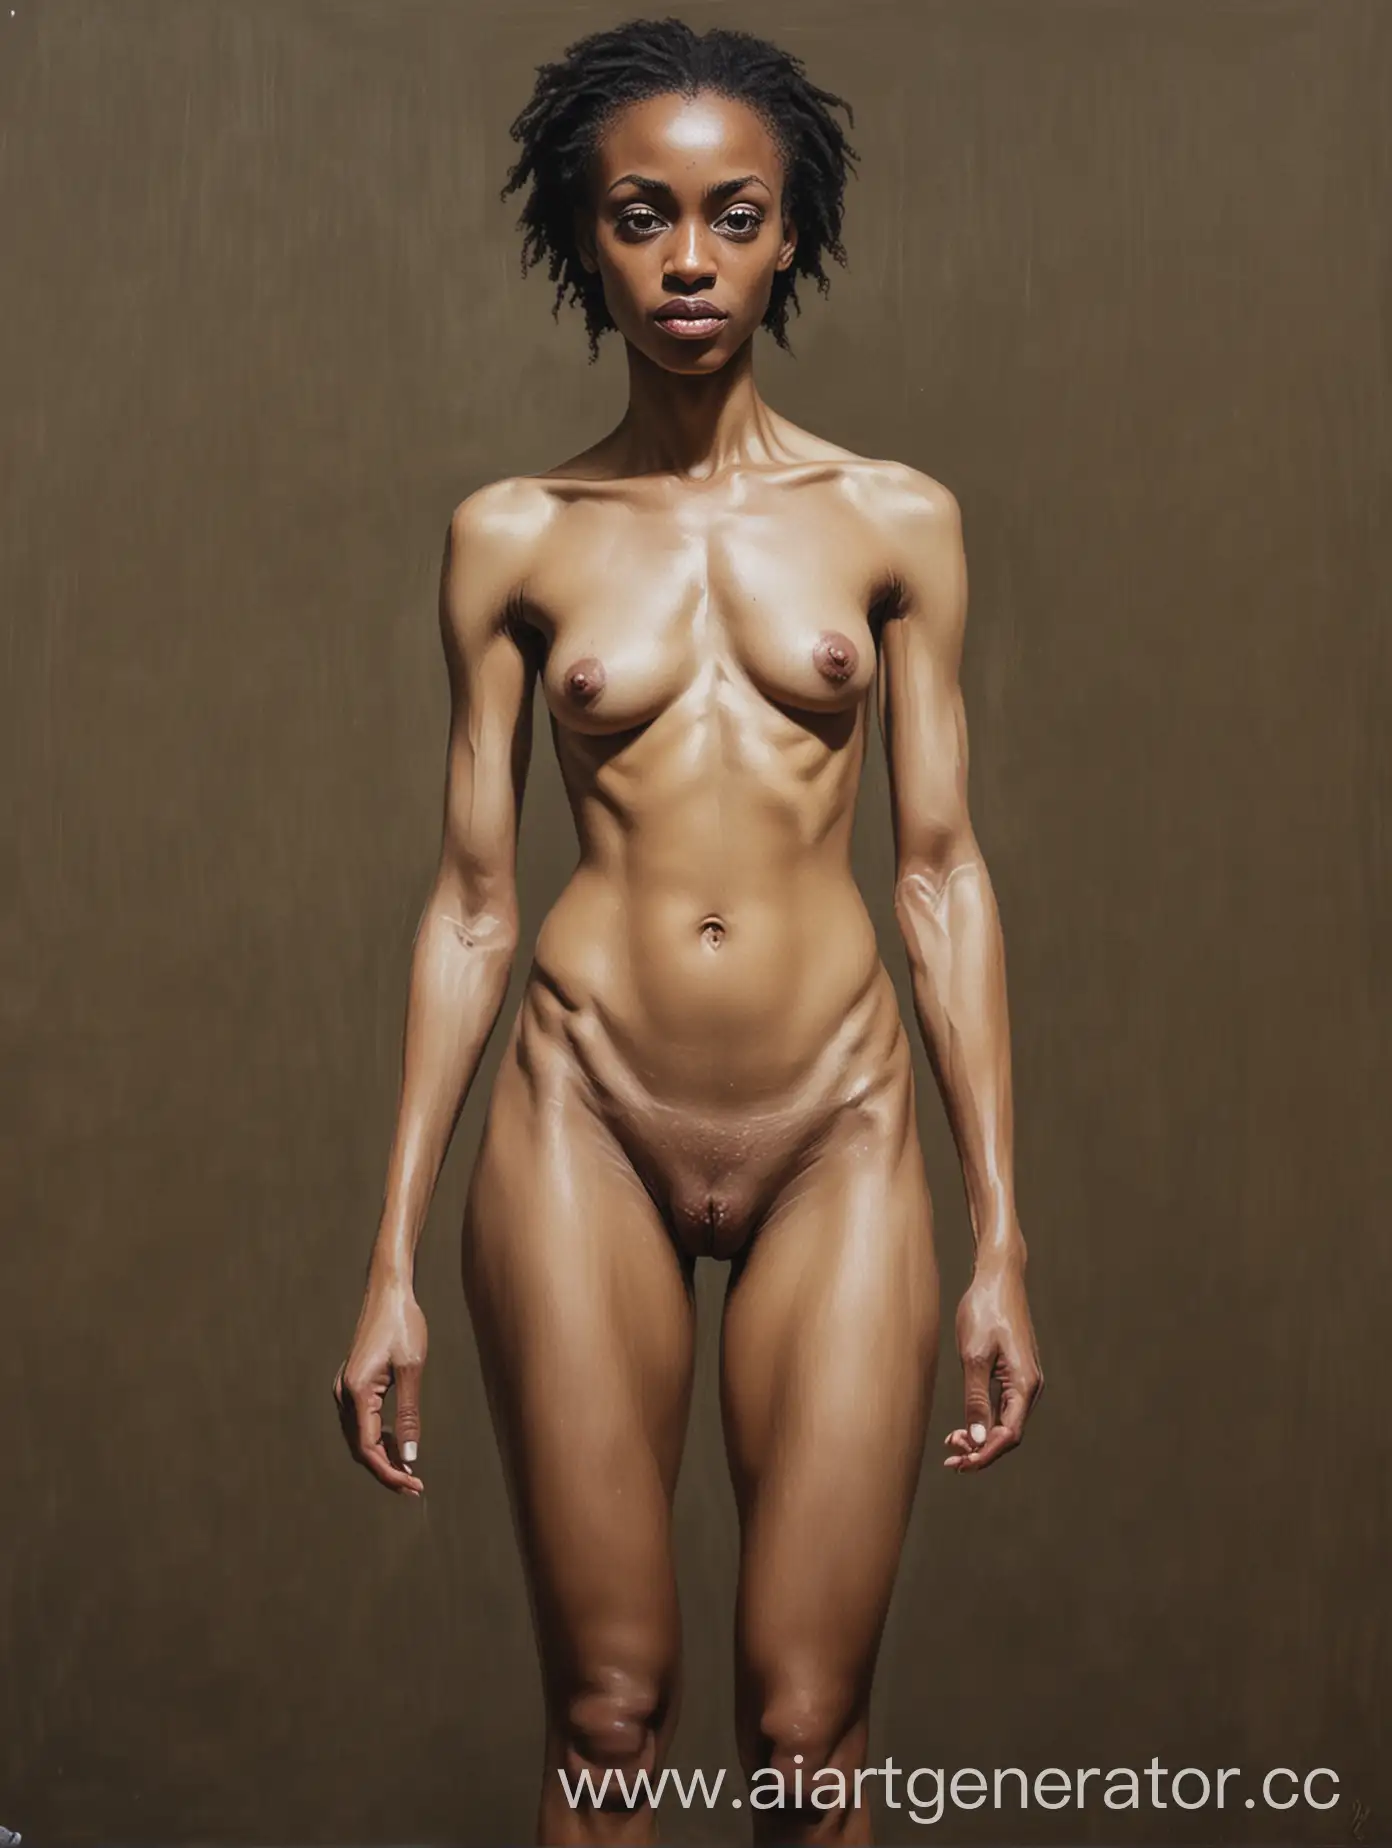 картина акрилом в полный рост, количество персонажей - 2: персонаж #1 - голая анорексичная африканка 29 лет; персонаж #1 - голая анорексичная русская милашка 40 лет